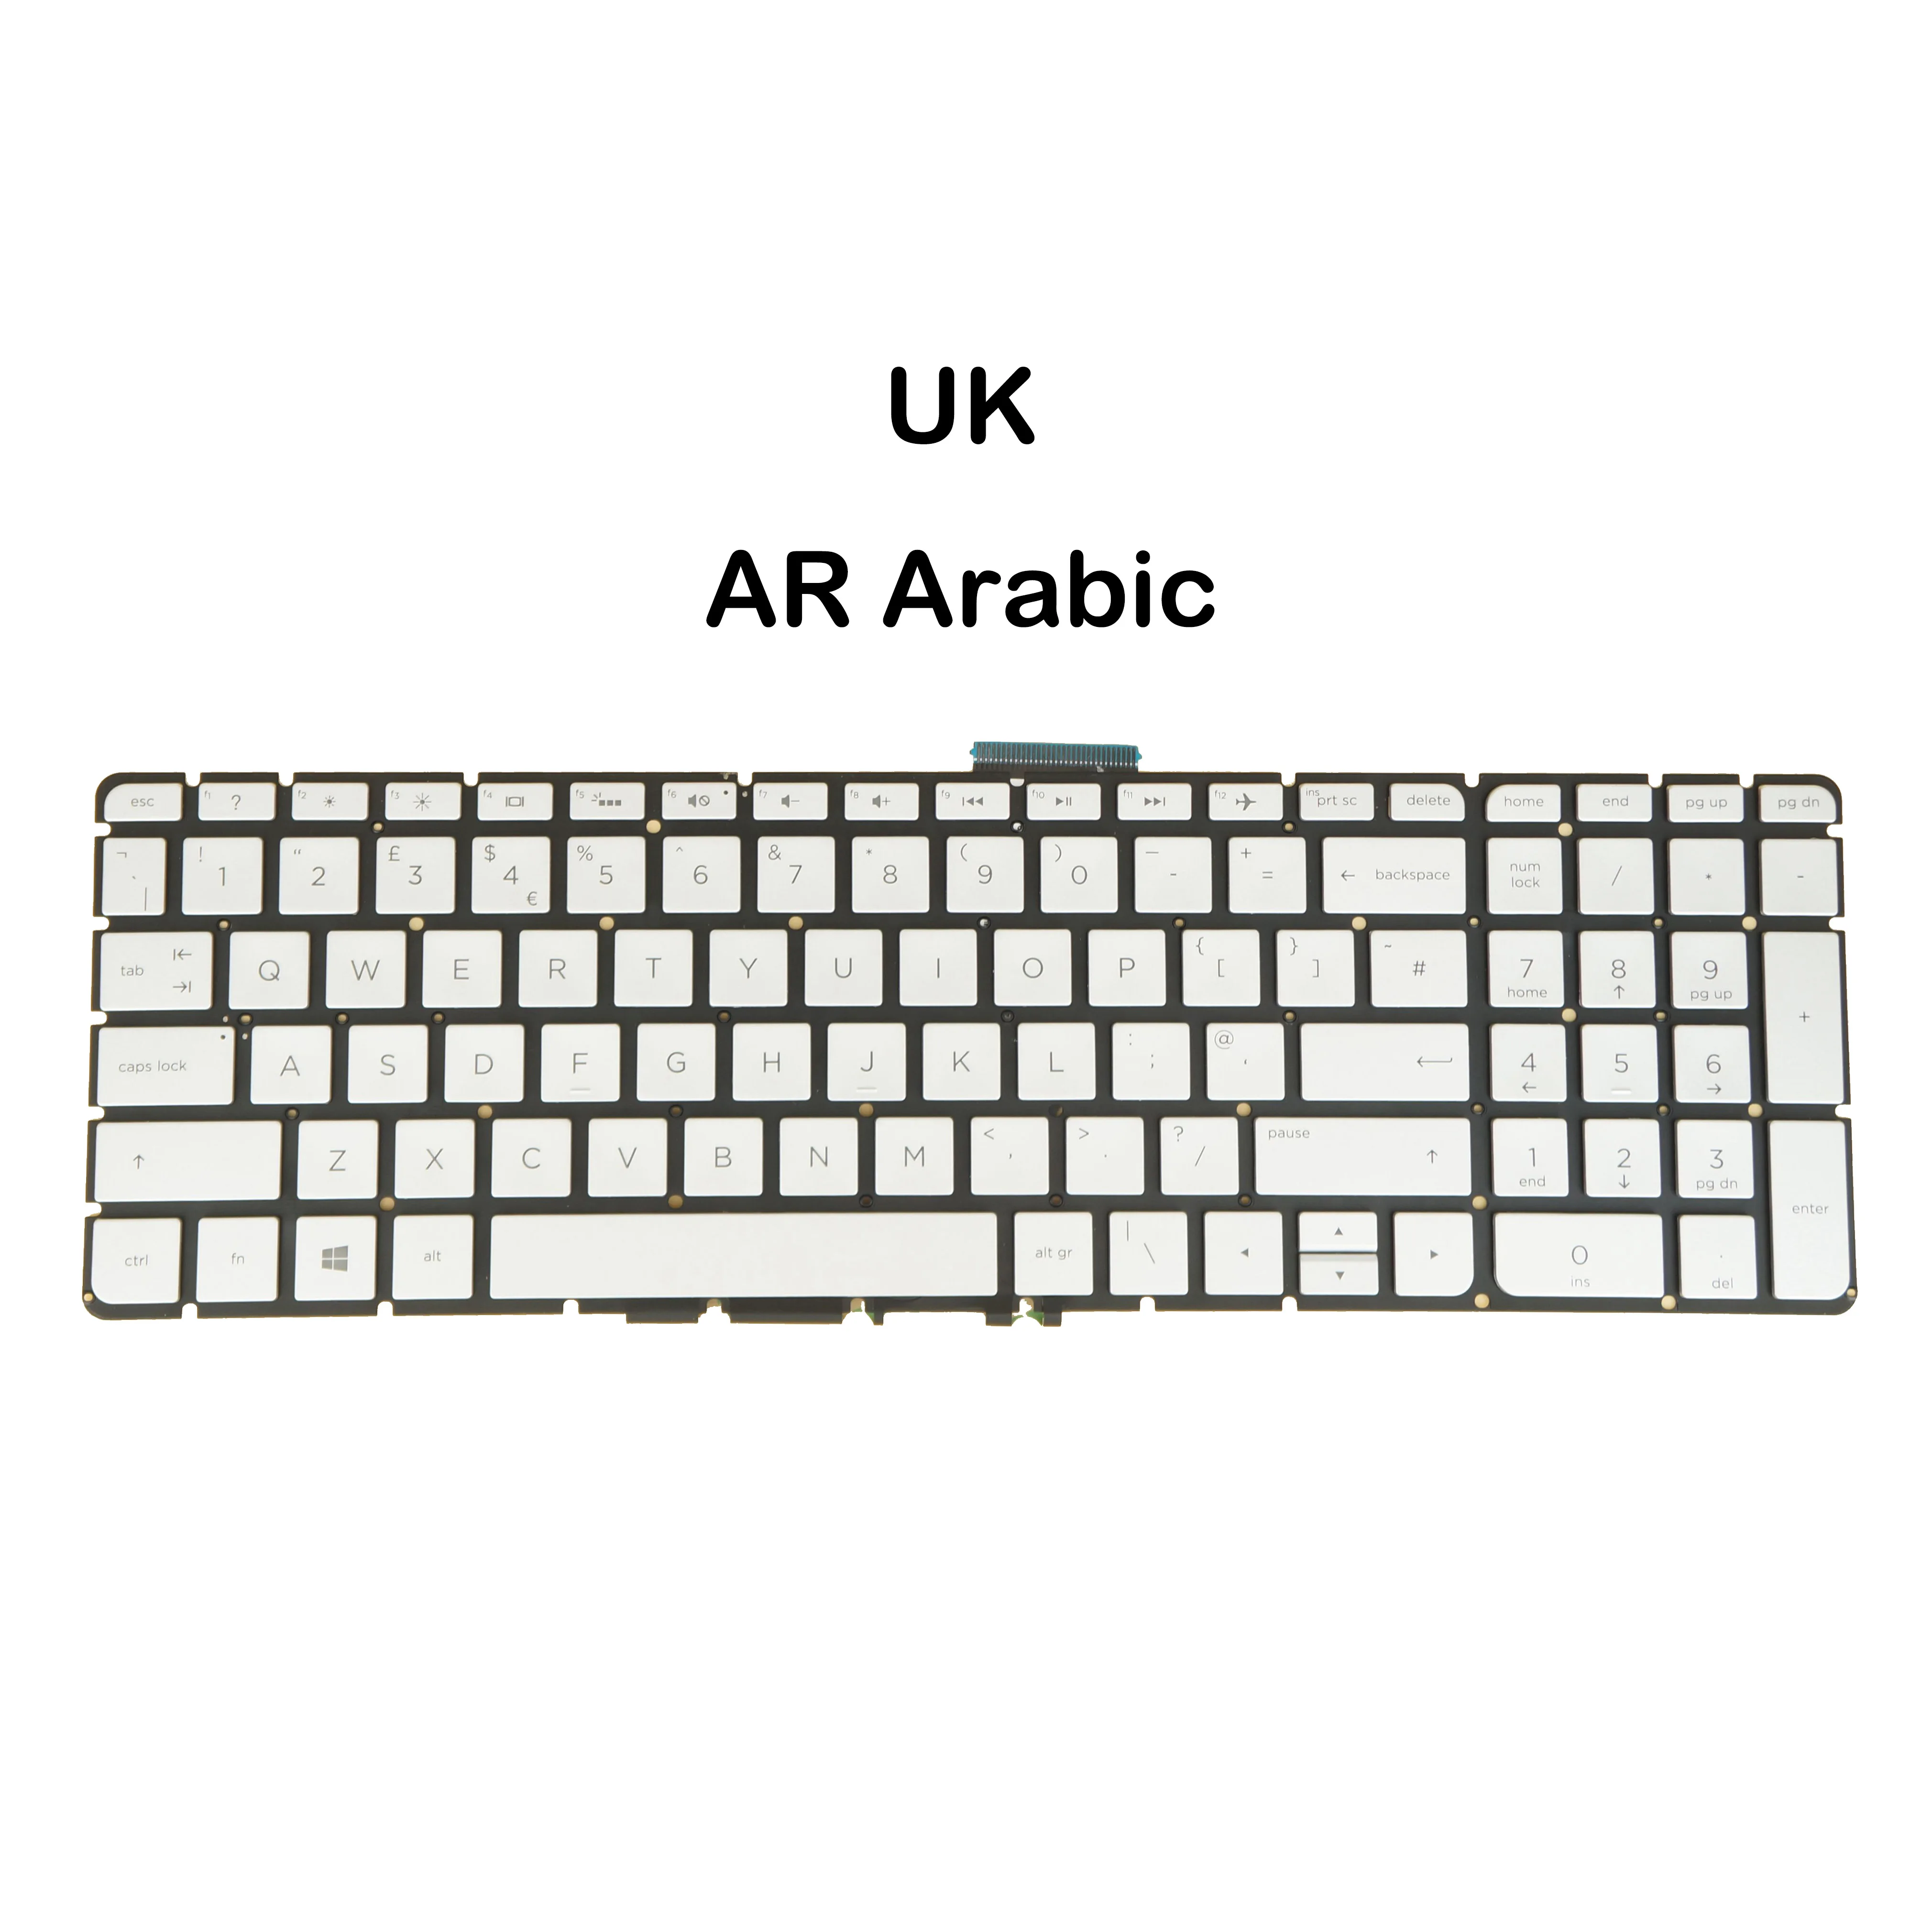 

UK Arabic Backlit Laptop Keyboard For HP m6-aq000 m6-ar000 15z-ar000 15t-aq000 15t-aq100 15-au000 15t-au000 15t-au100 15-aw000